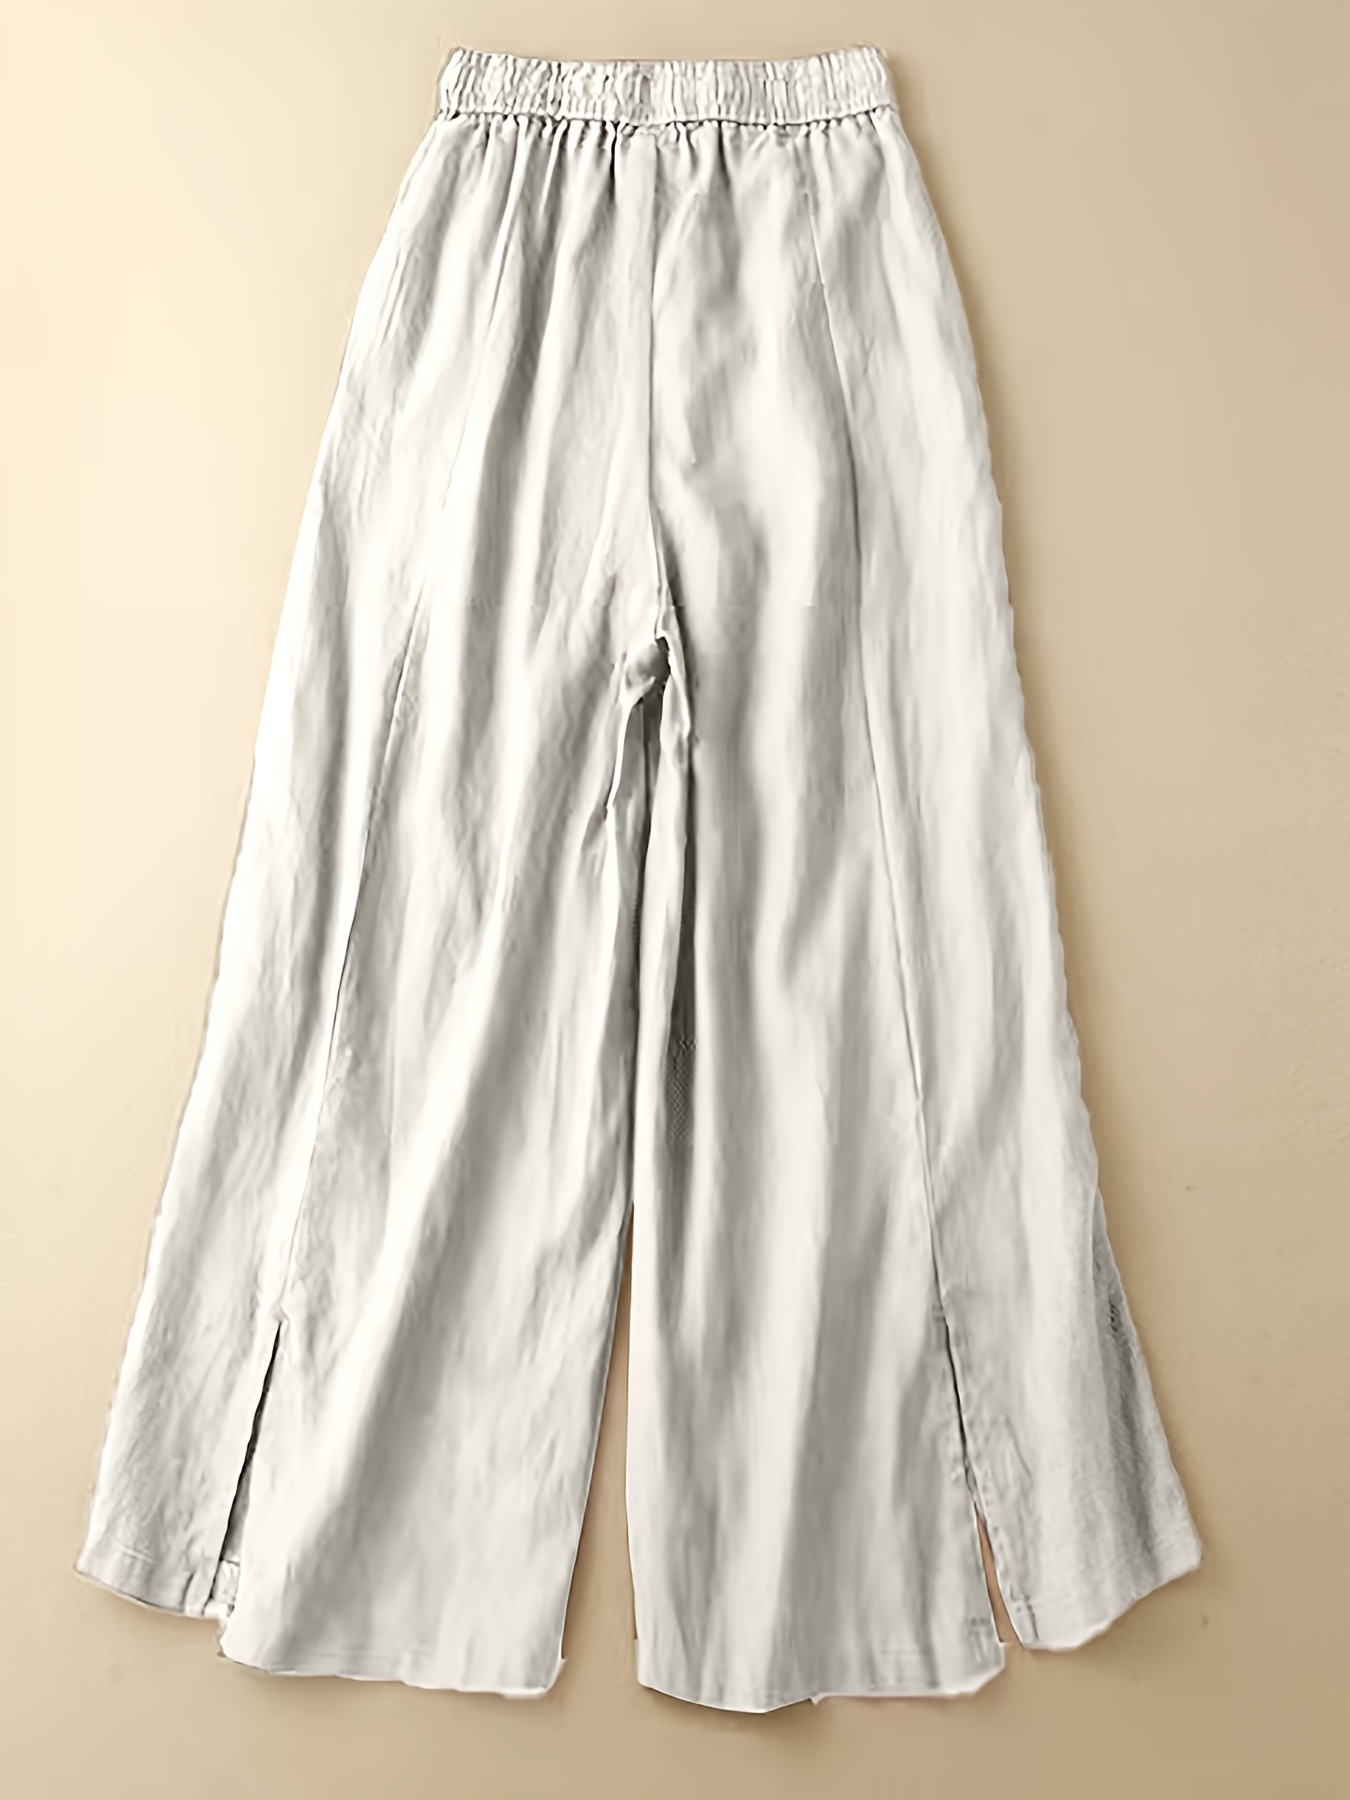 Pantalones Anchos Con Cordón Sólido, Pantalones Sueltos Casuales Para  Primavera Y Otoño, Ropa De Mujer